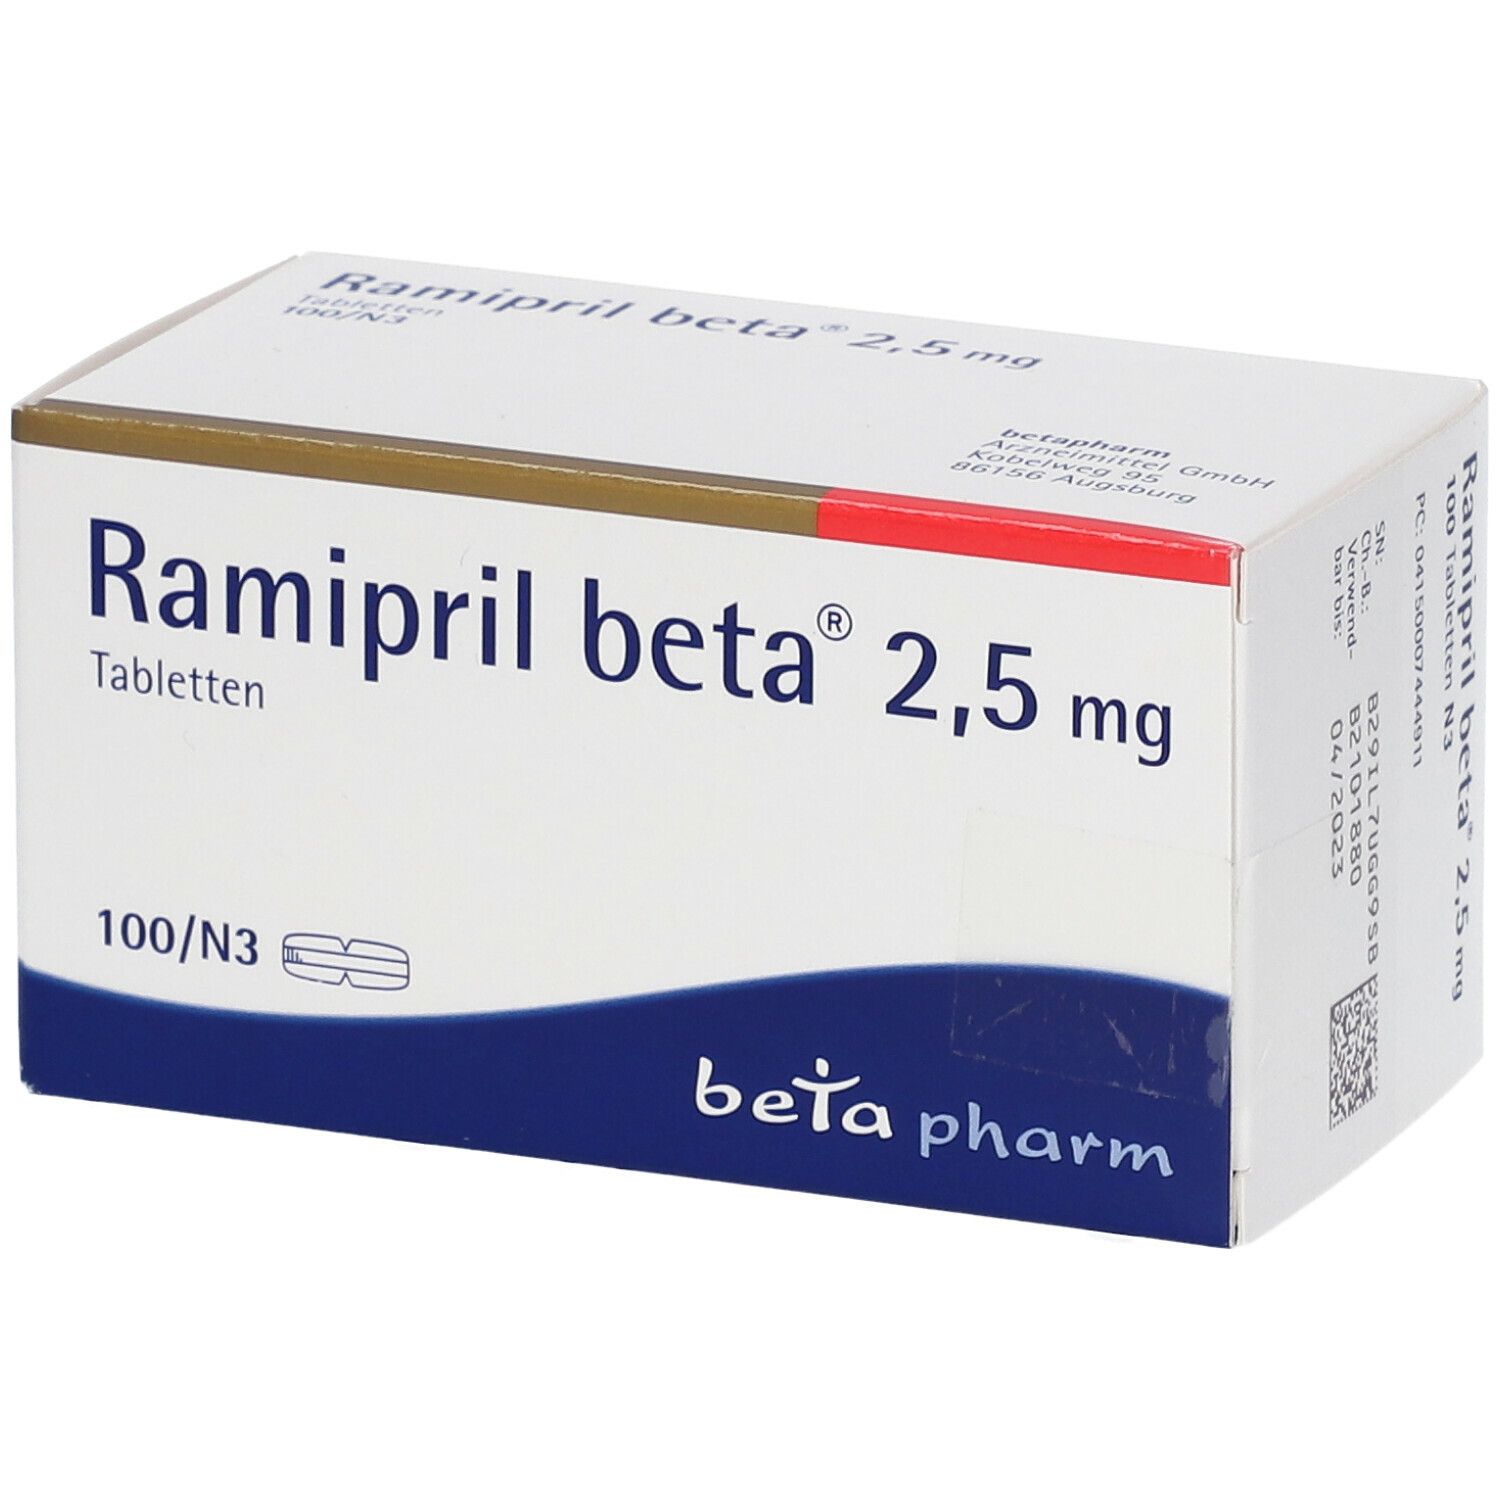 Ramipril beta® 2,5 mg